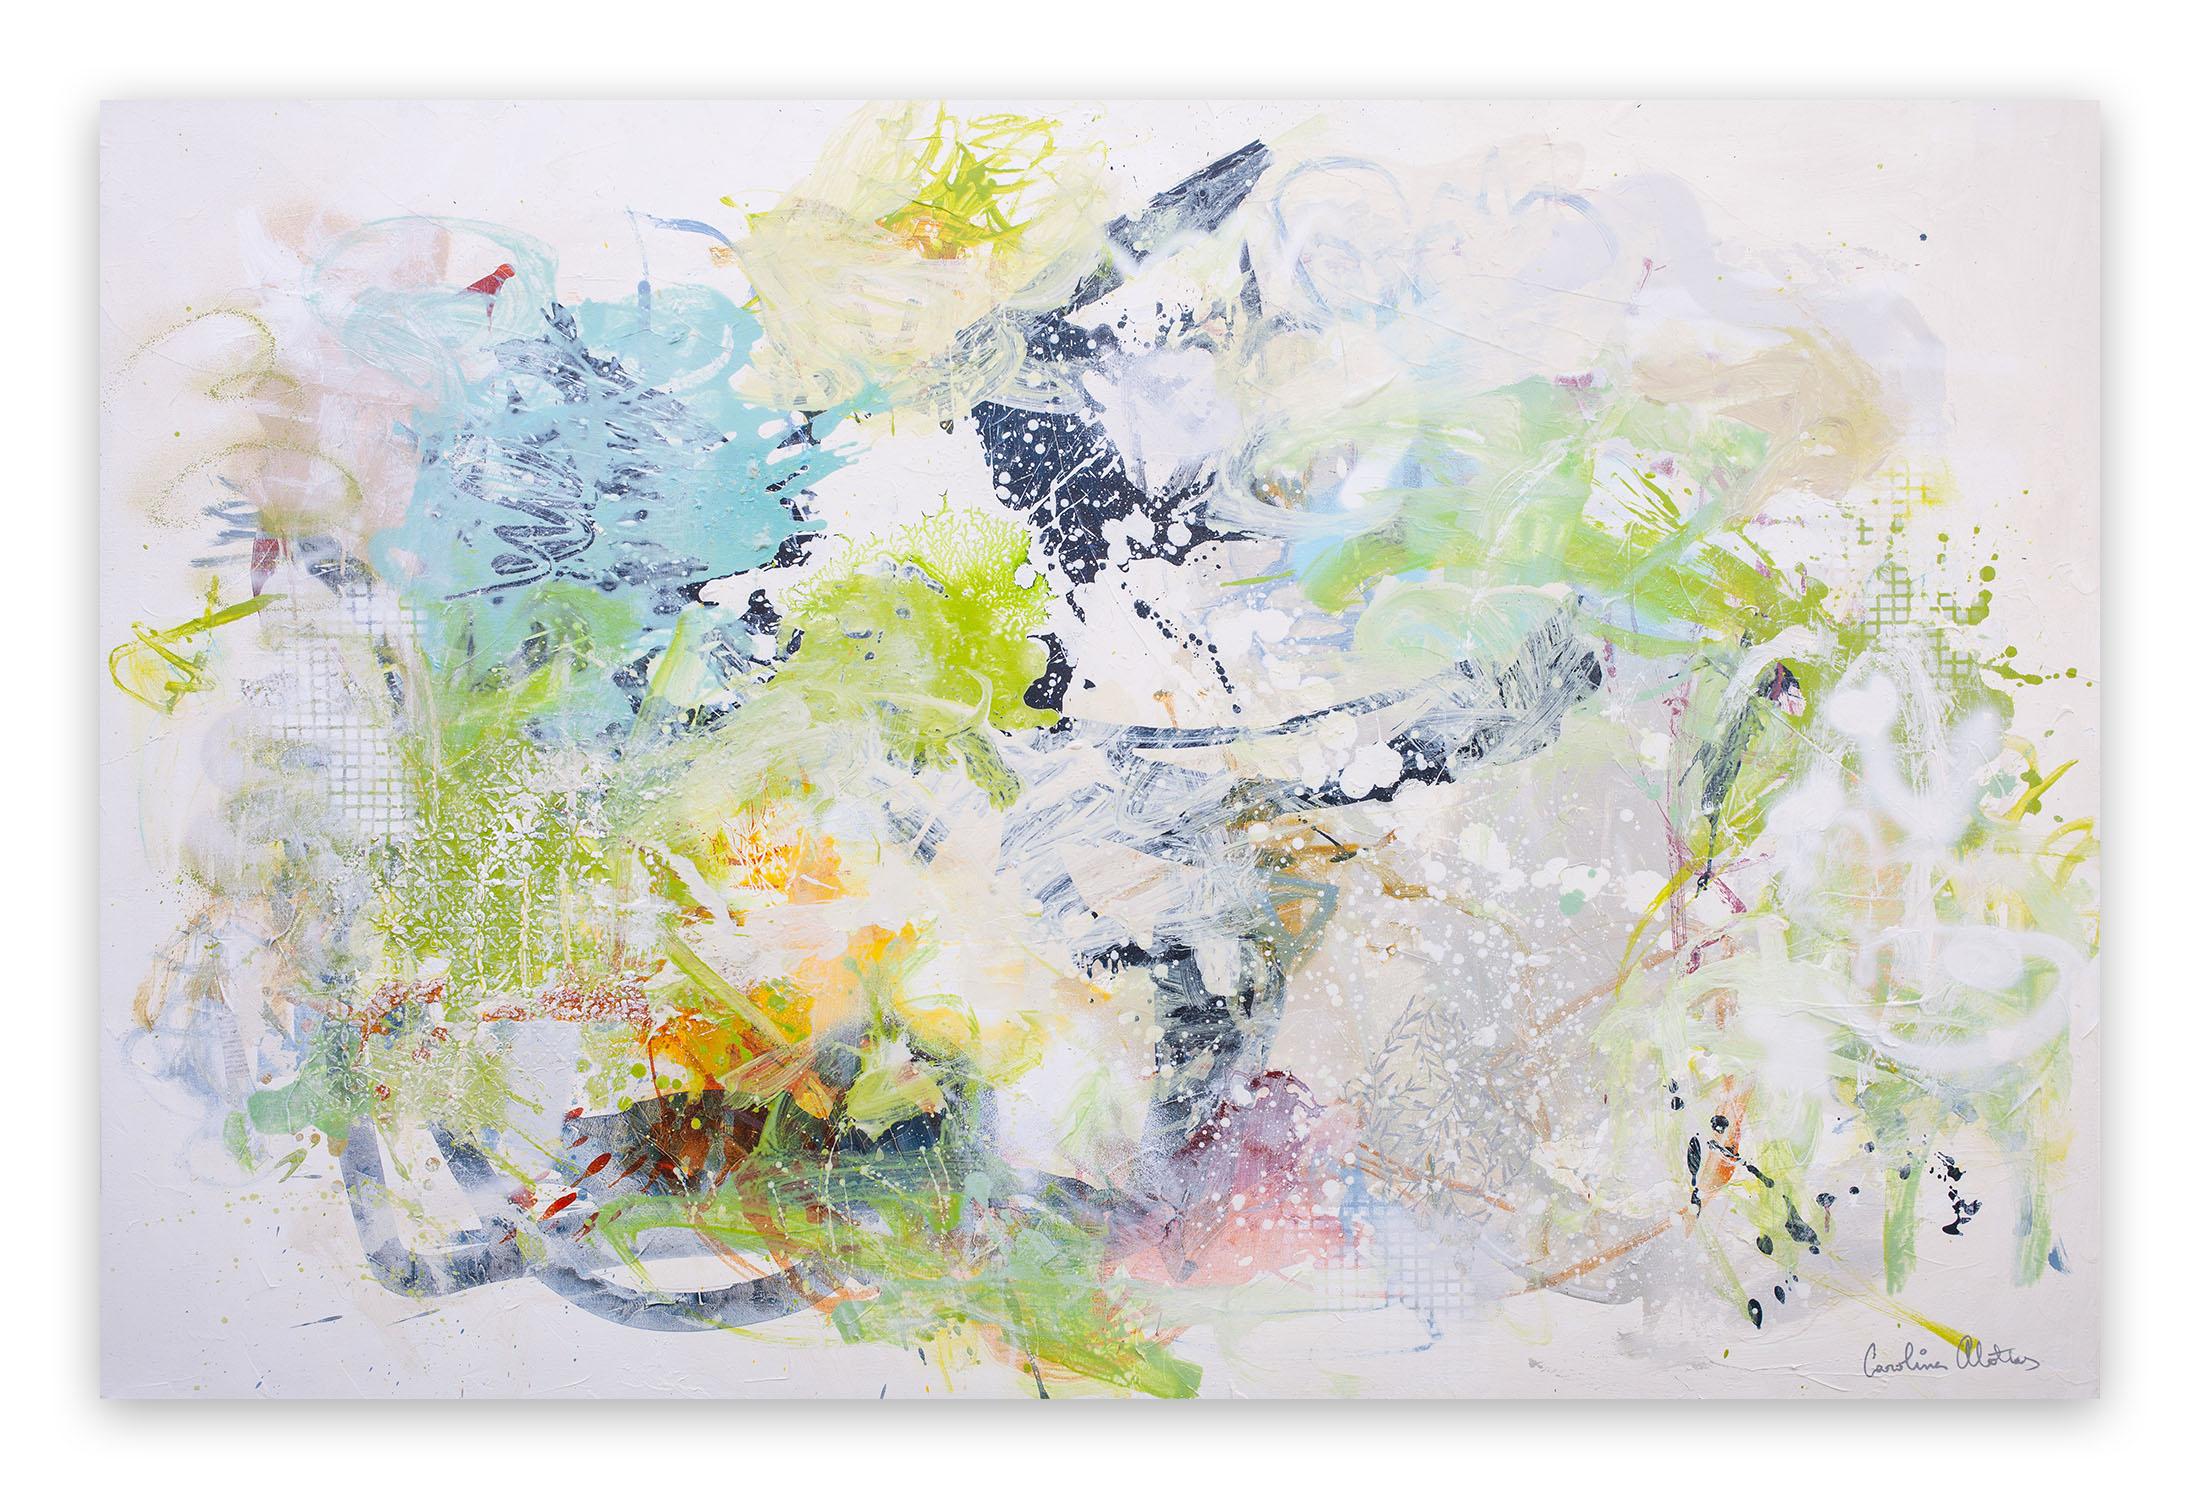 Carolina Alotus Abstract Painting - Tender greens (Abstract painting)